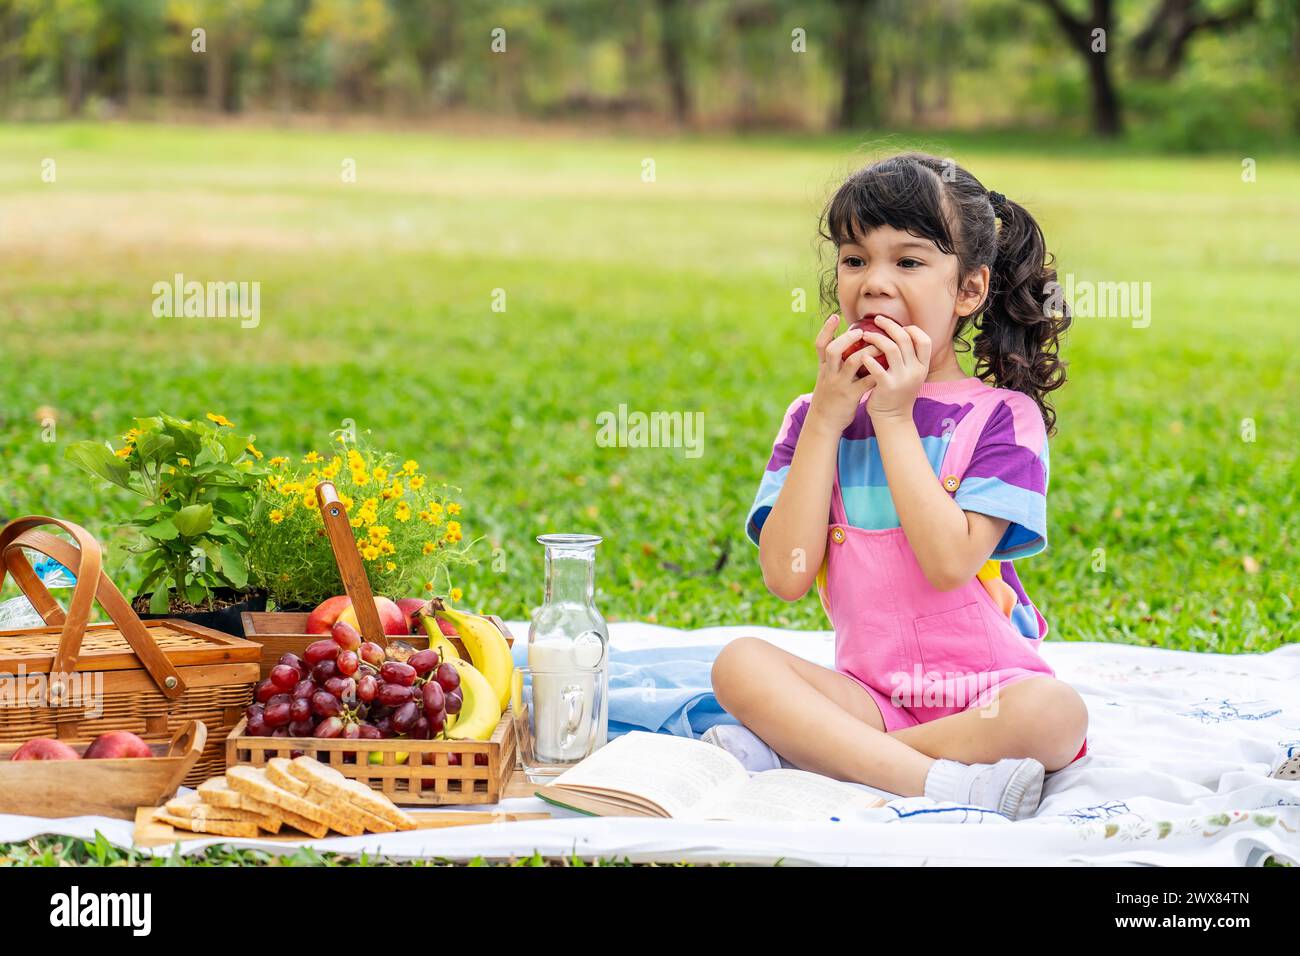 Giovane ragazza in coperta al parco che si diverte con la mela Foto Stock